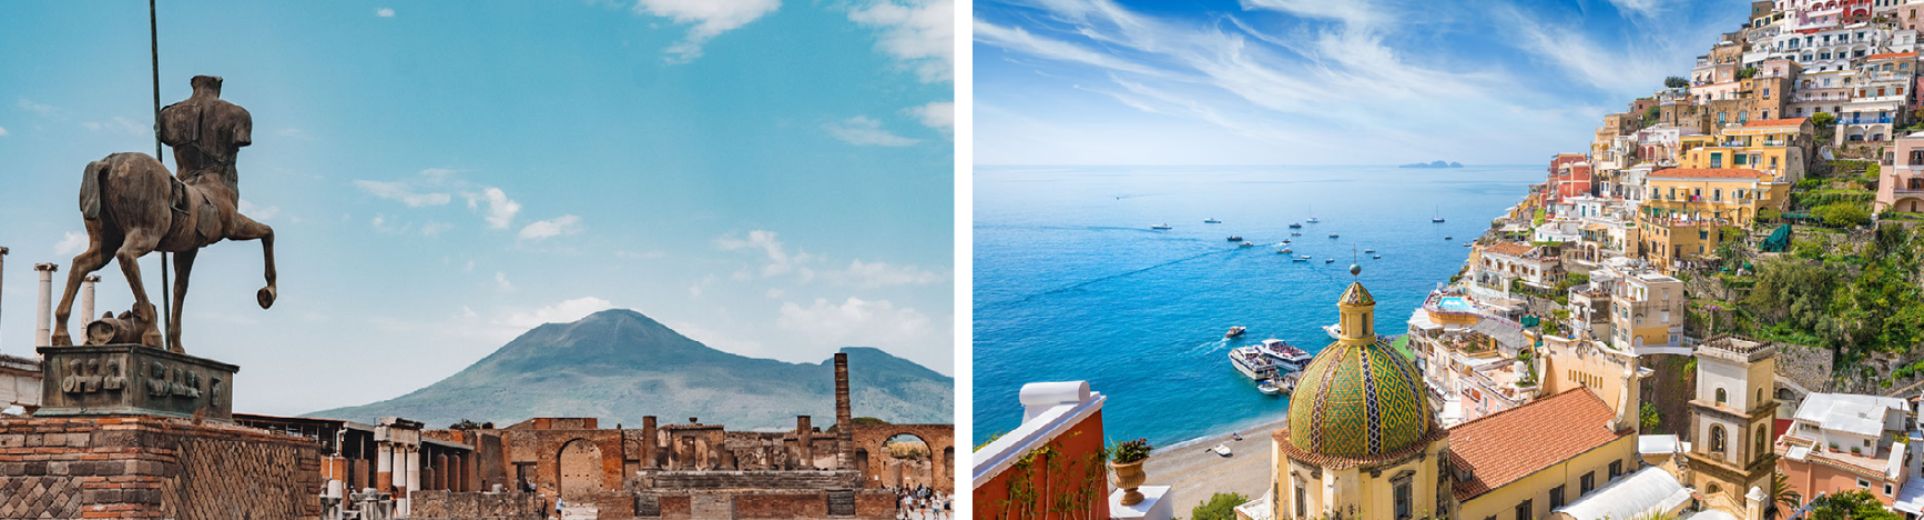 Excursión de un día a Pompeya y la costa de Amalfi